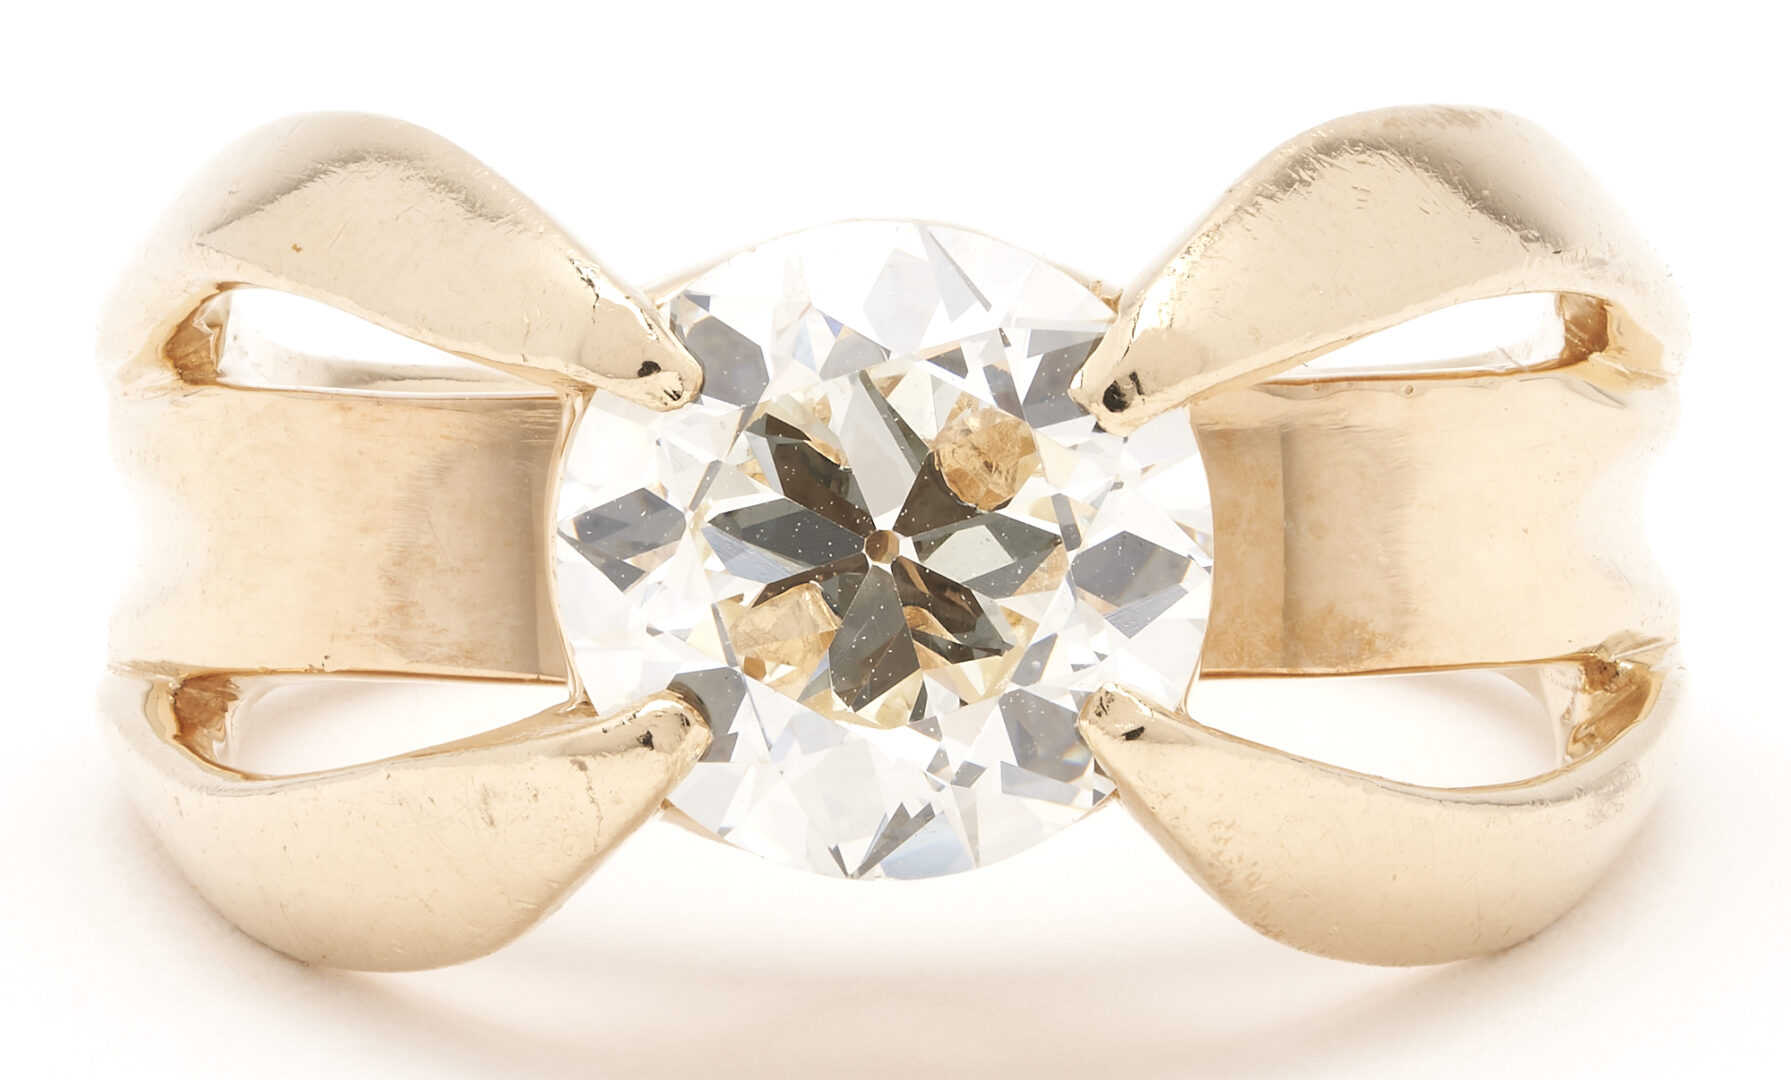 Lot 30: Ladies 2.20 Carat Euro Diamond Solitaire Ring, GIA Report